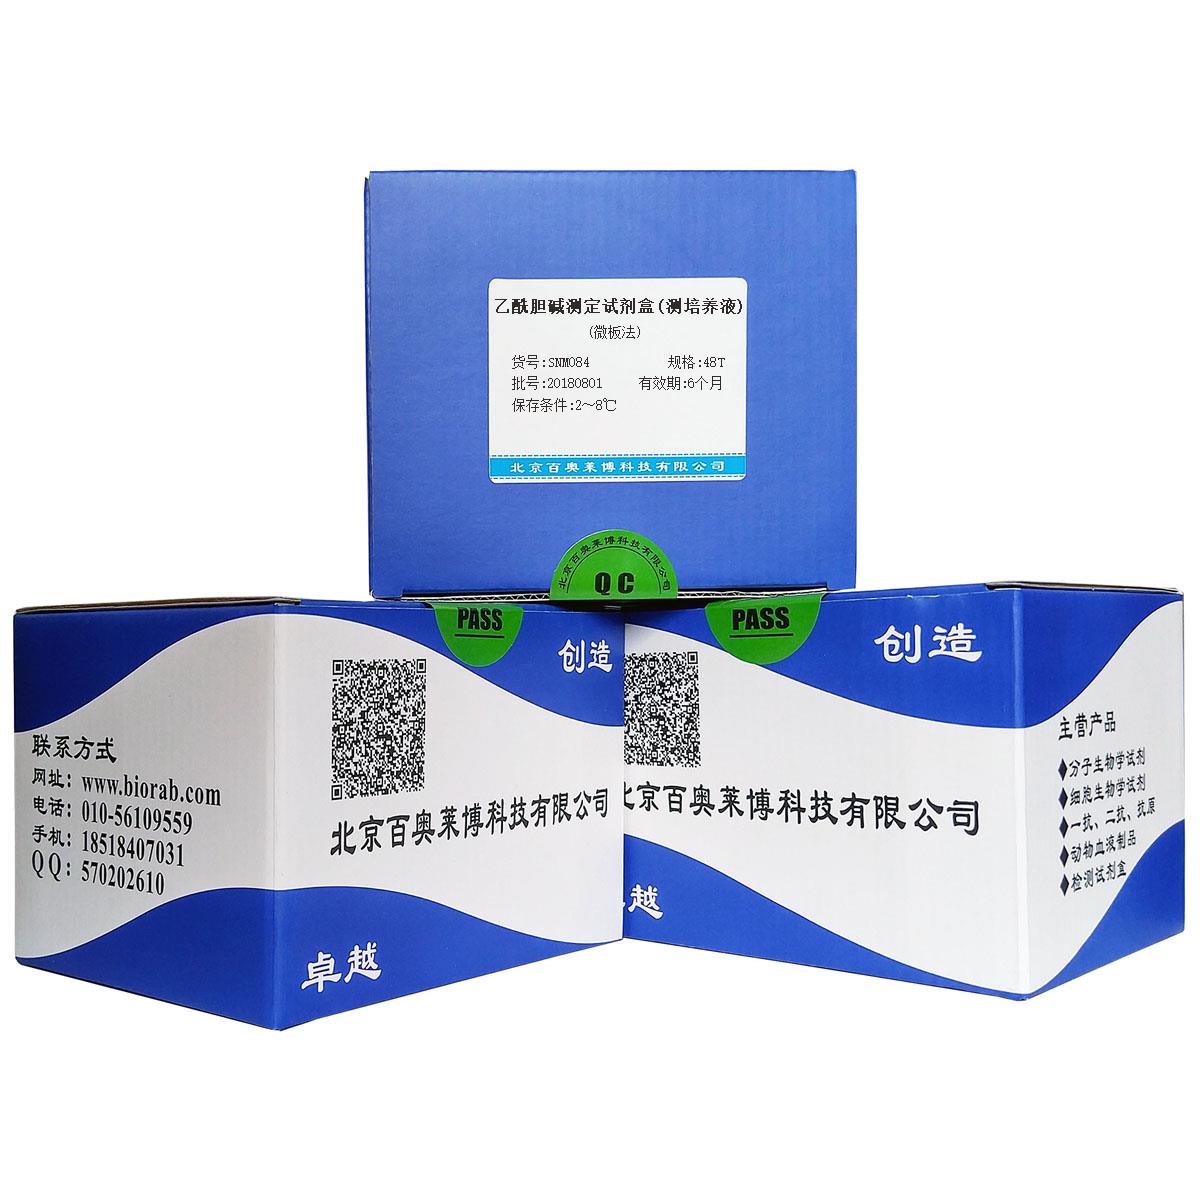 乙酰胆碱测定试剂盒(测培养液)(微板法)